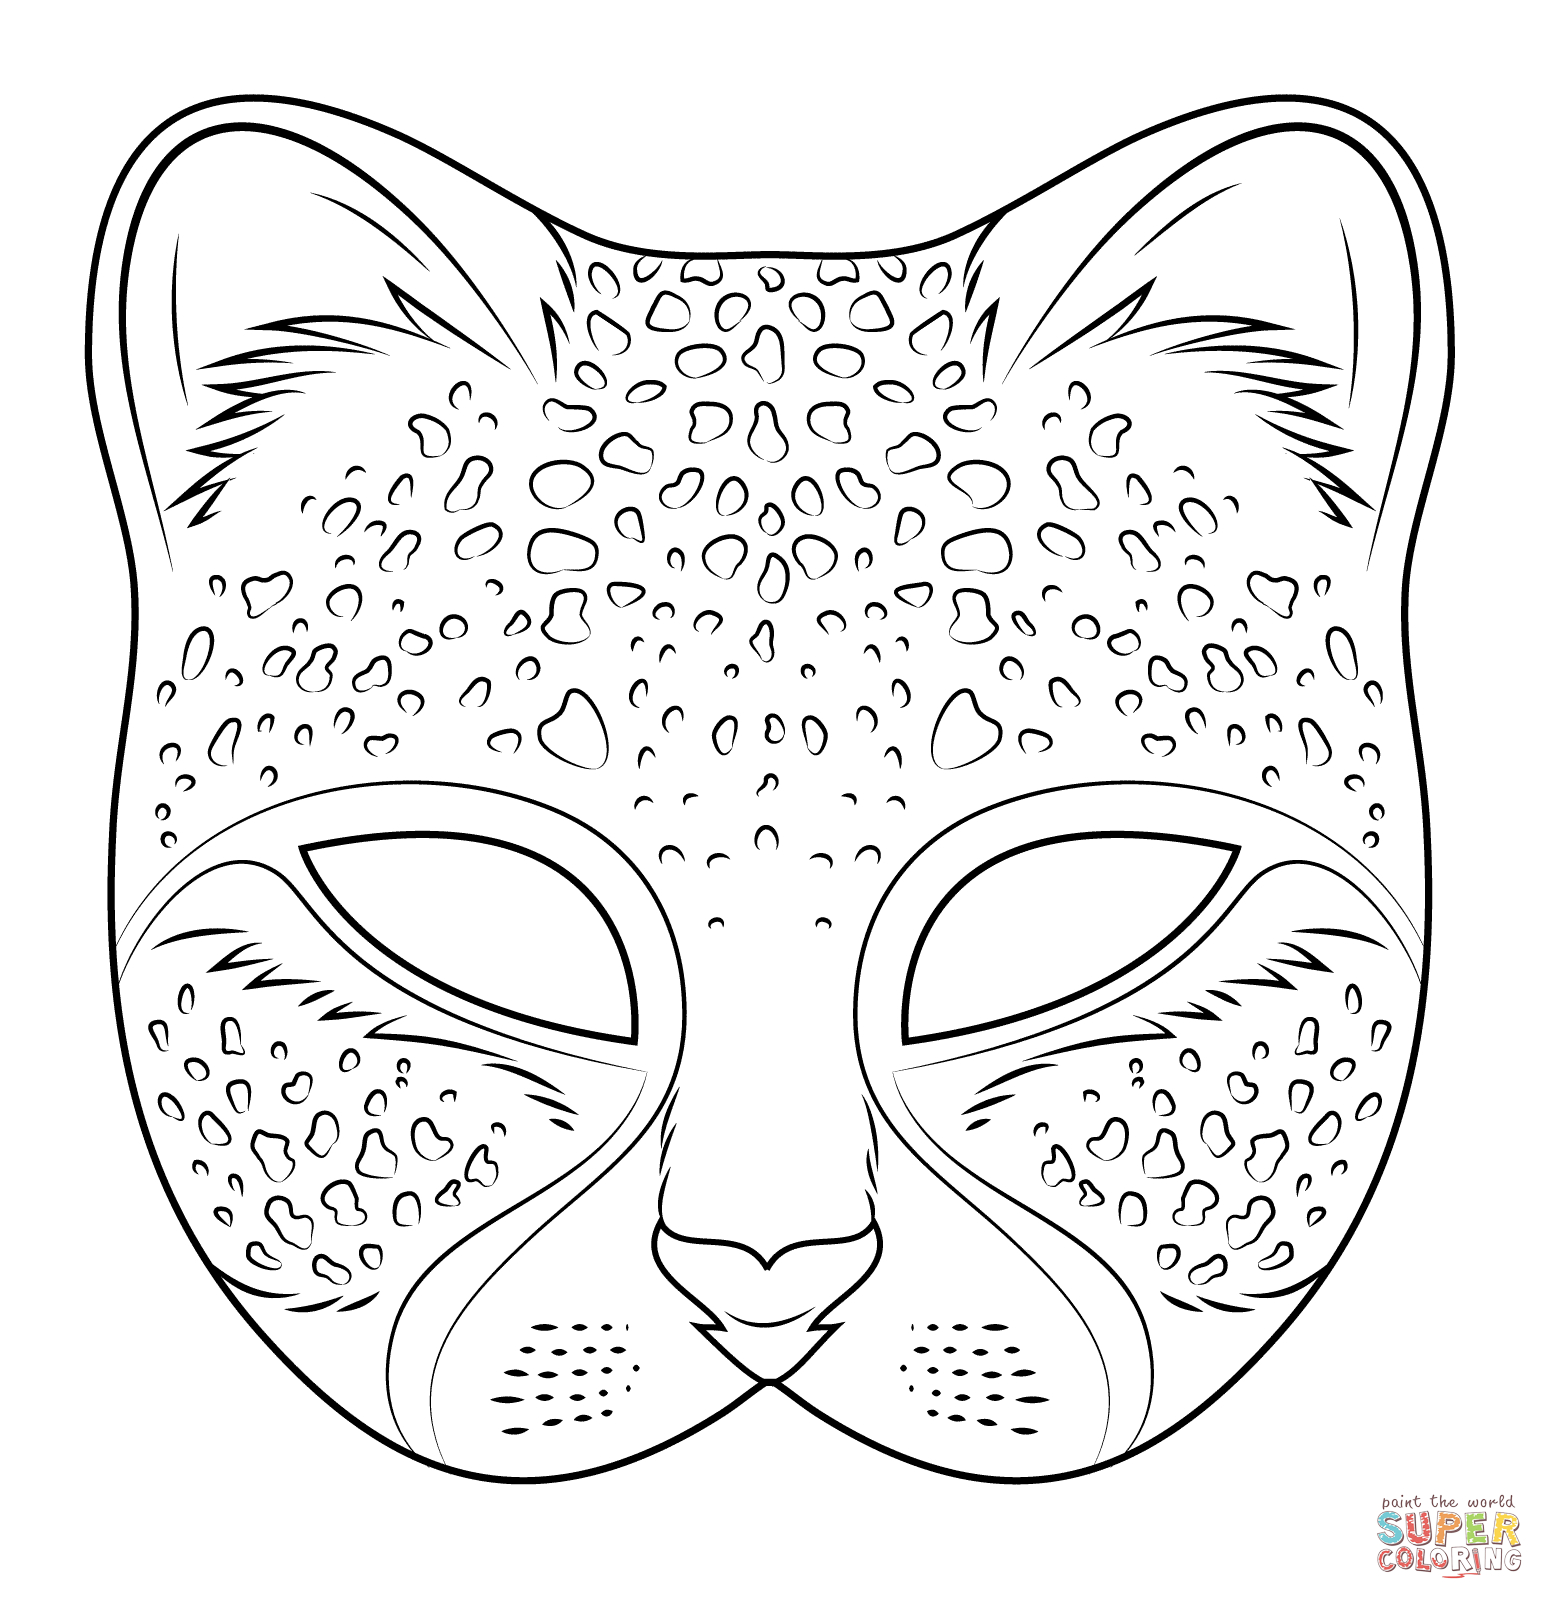 Ausmalbild: Gepard Maske | Ausmalbilder Kostenlos Zum Ausdrucken verwandt mit Masken Zum Ausdrucken Kostenlos